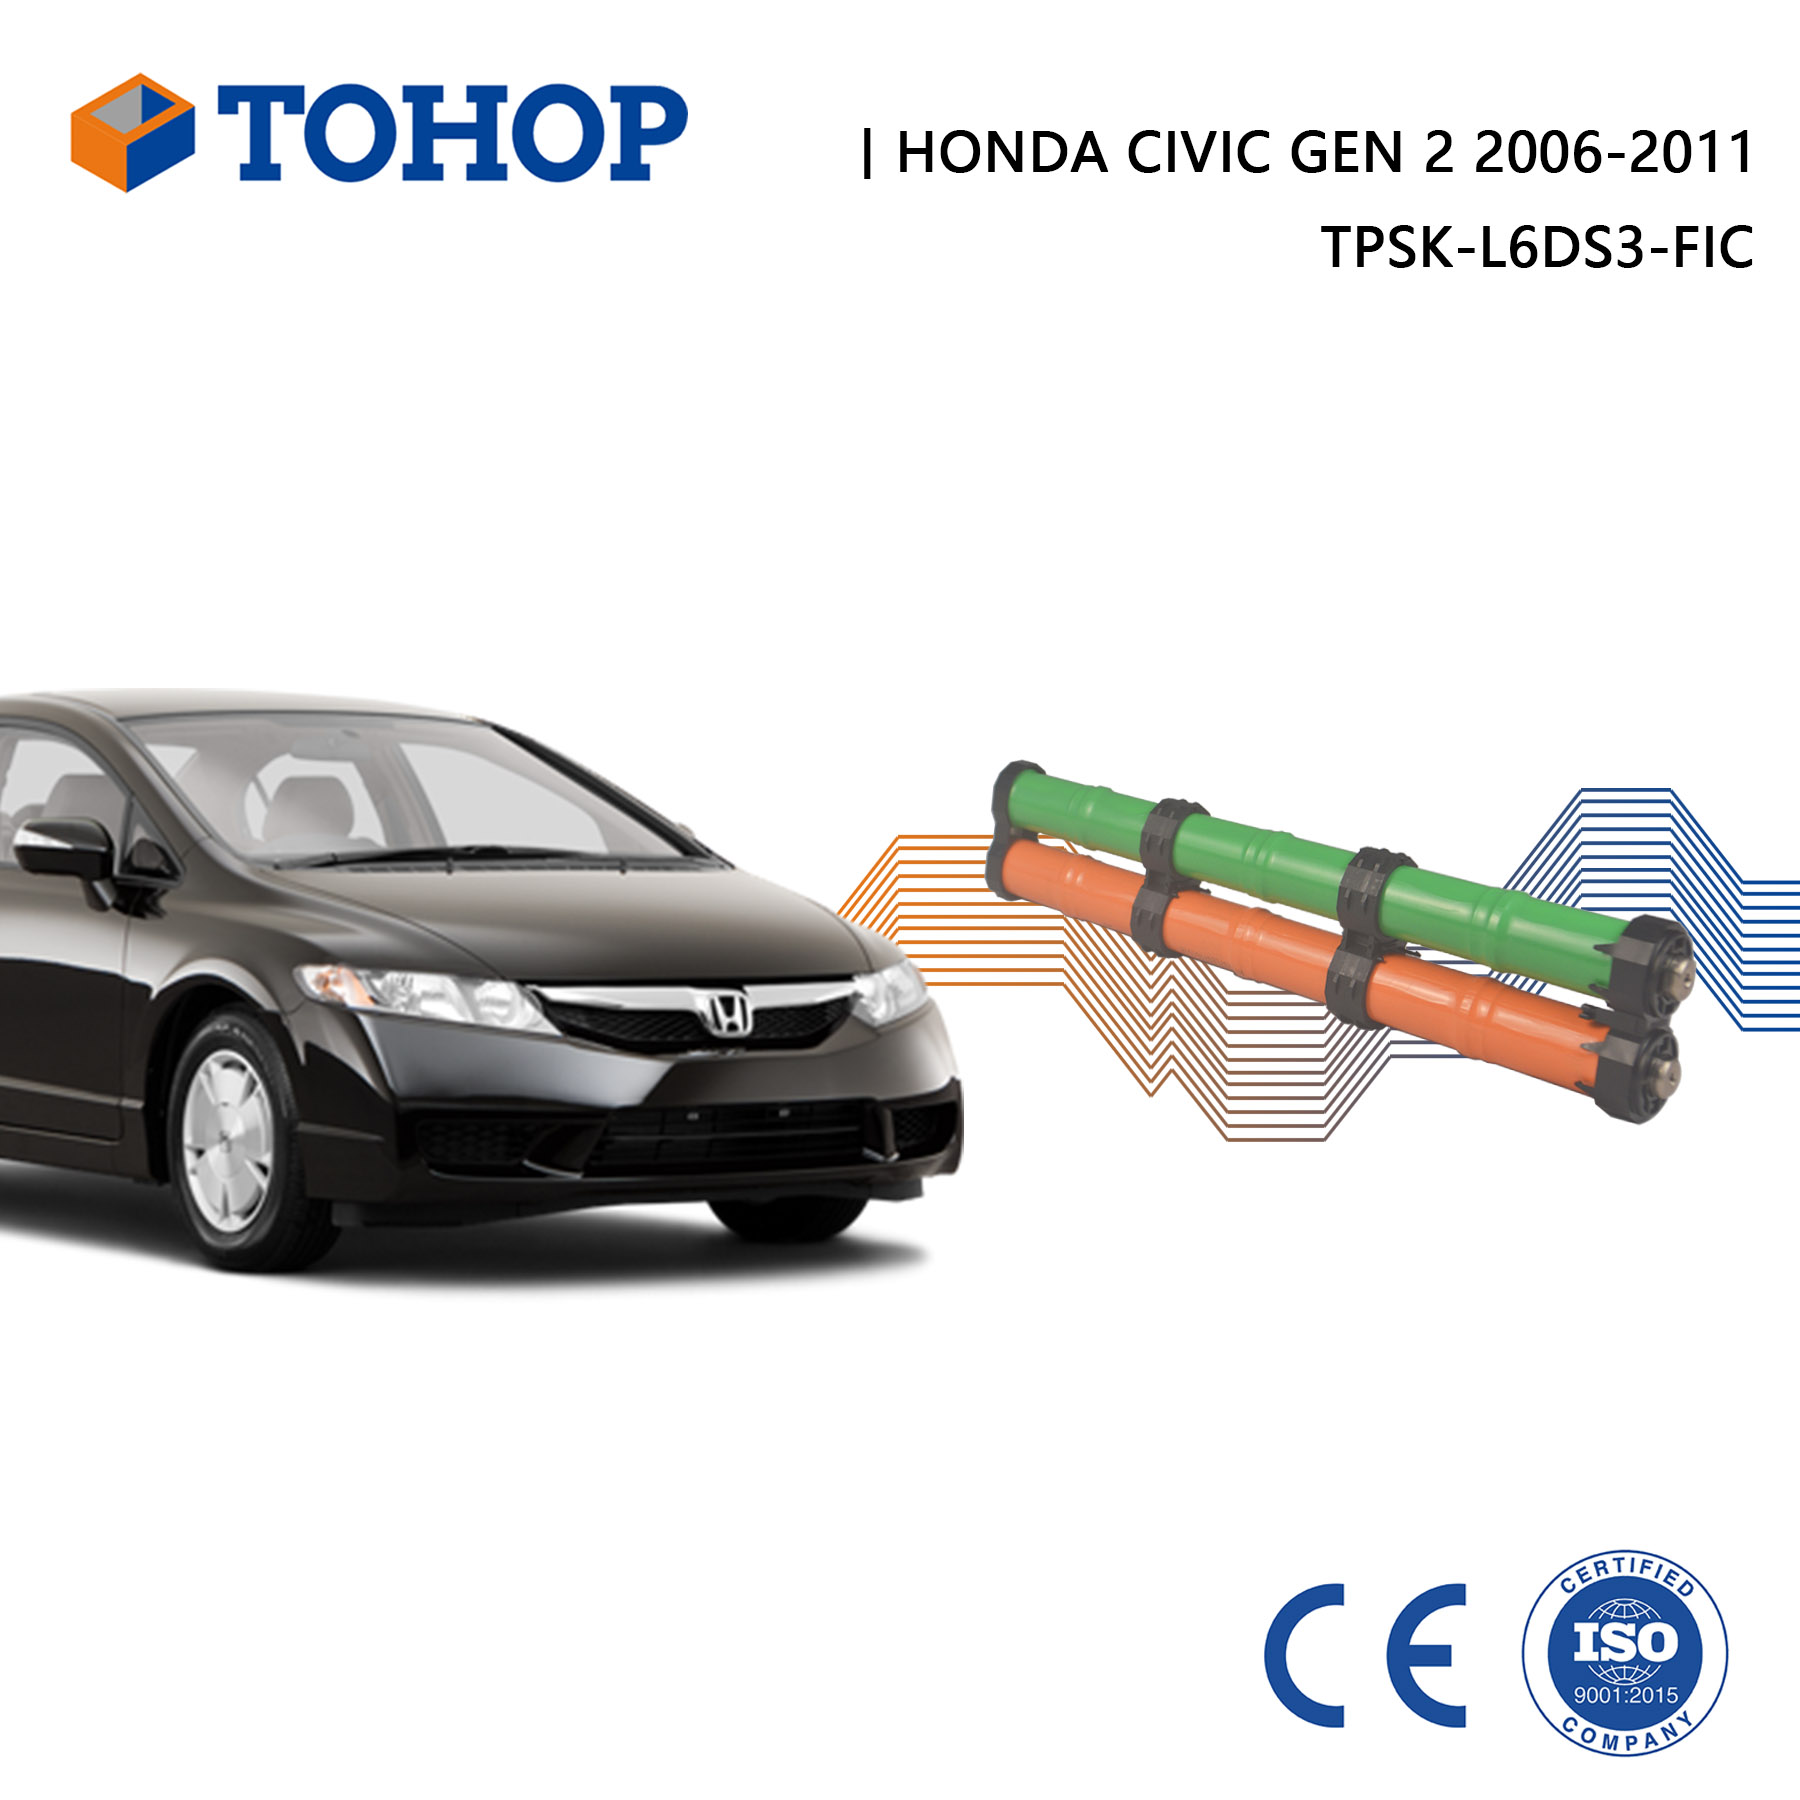 Batterie hybride Honda Civic Gen.2 14,4 V 6,5 Ah 2006-2011.